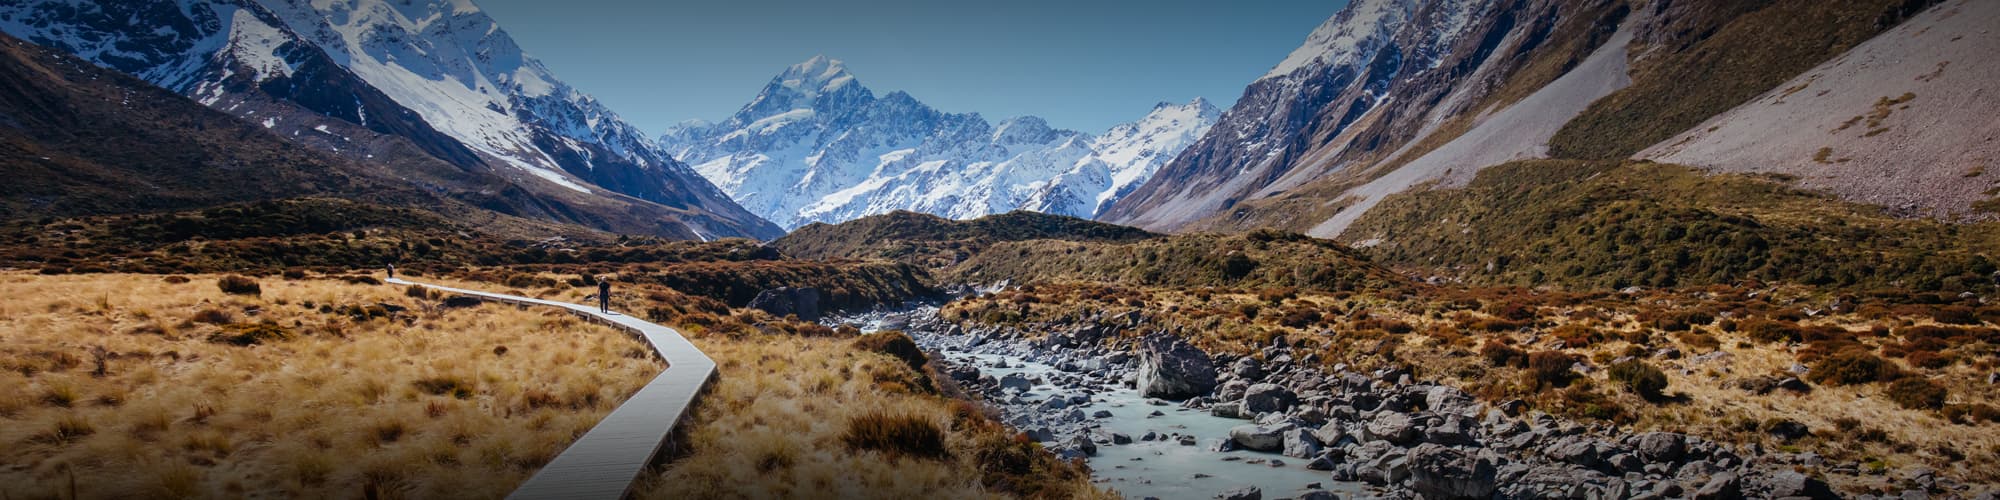 Randonnée en Nouvelle-Zélande : trek, découverte et voyage © FiledIMAGE